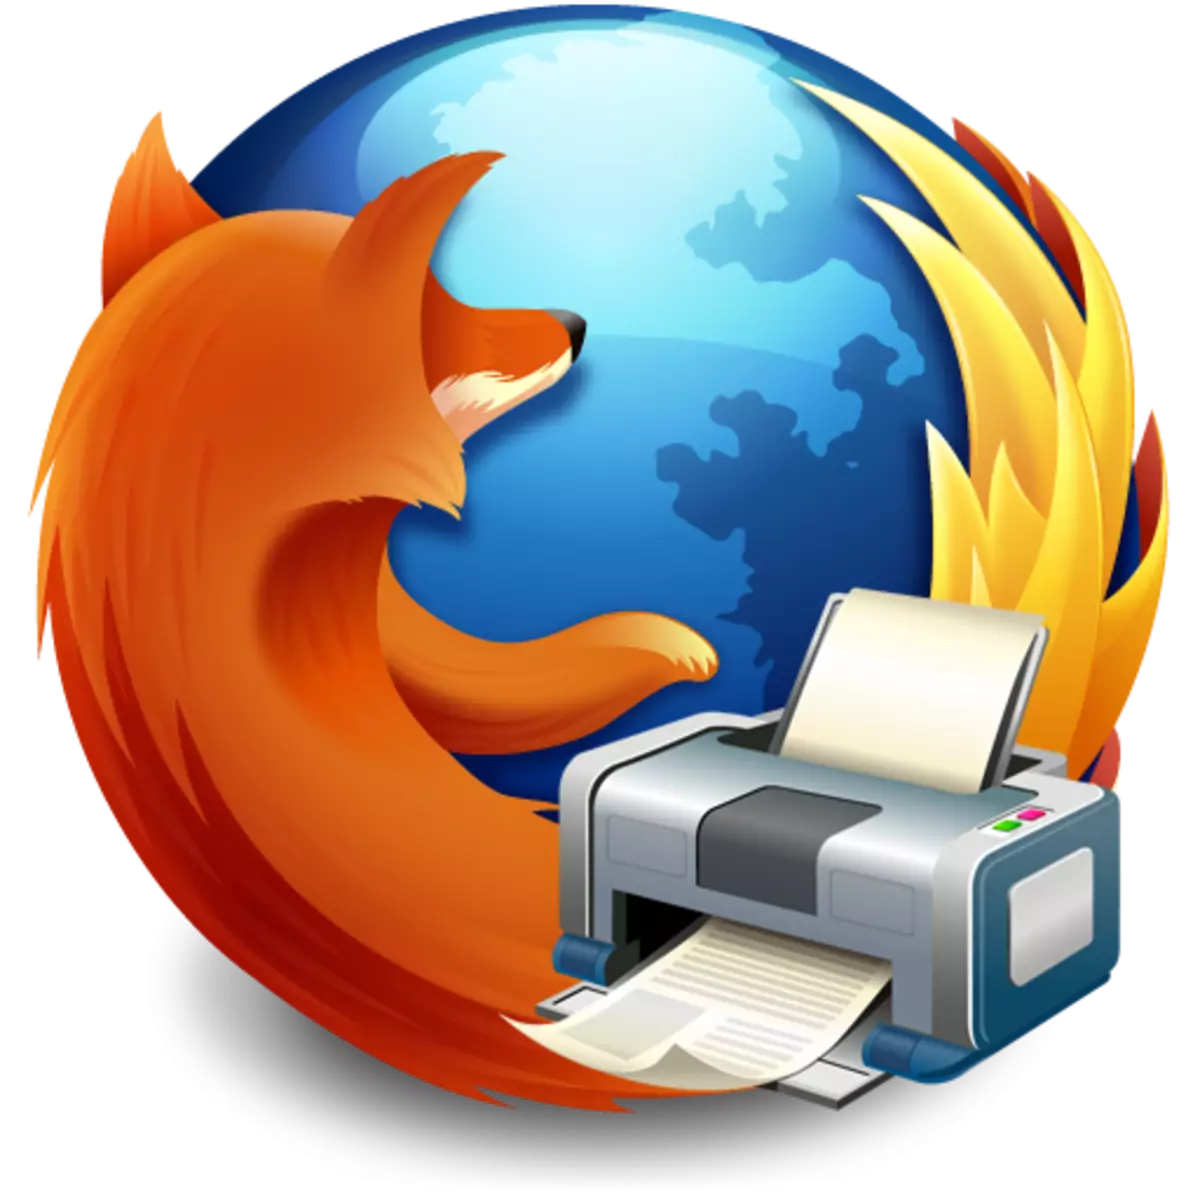 Firefox inopwanya kana ichidhinda mapeji